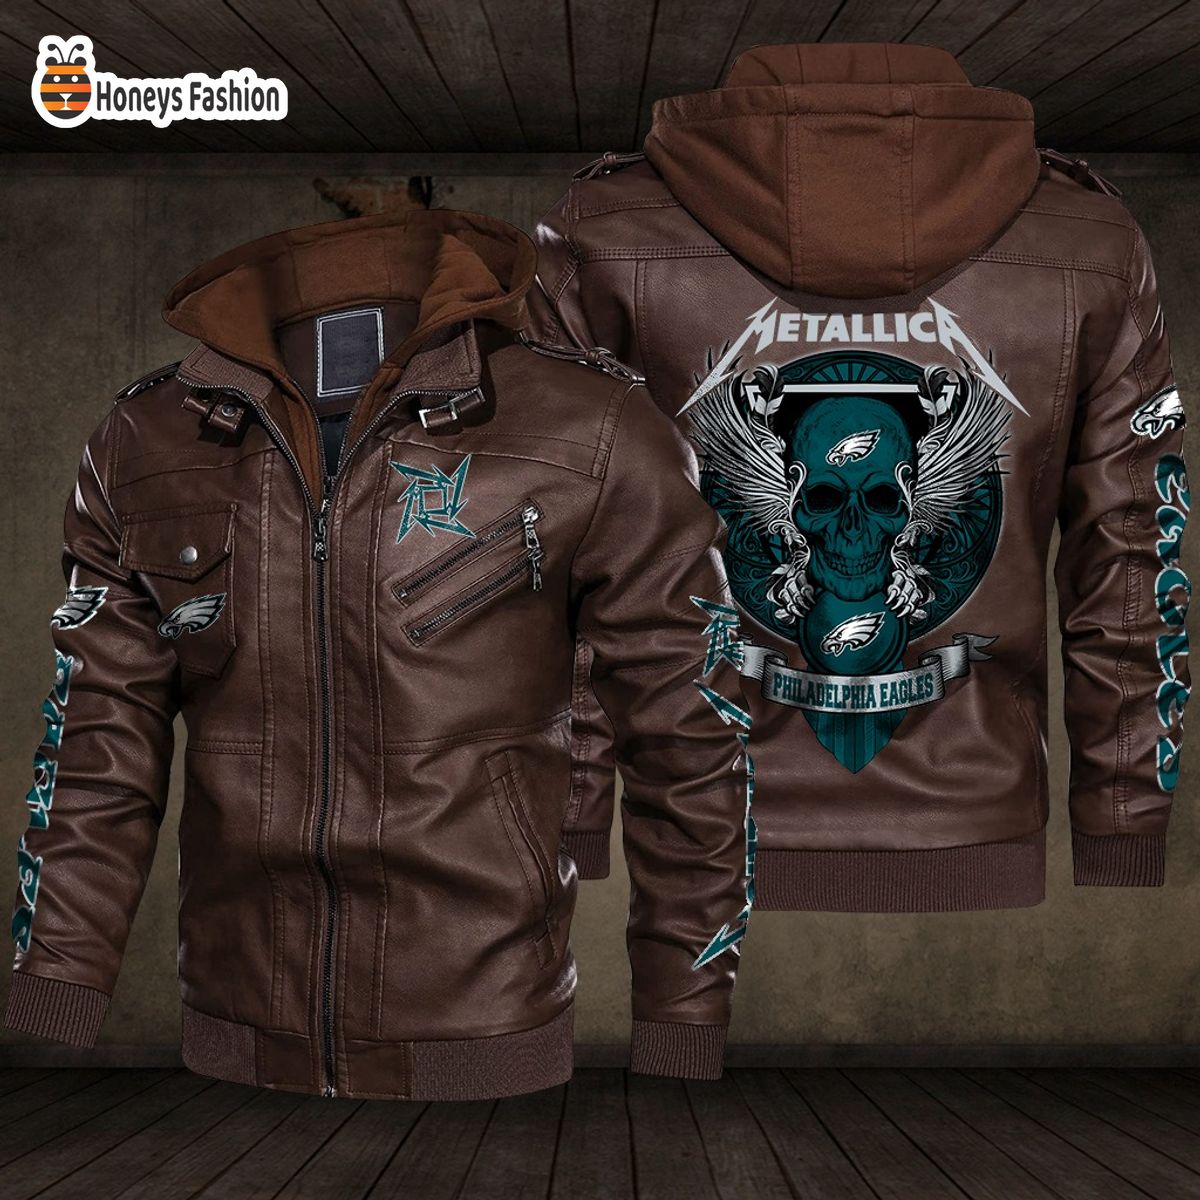 Philadelphia Eagles NFL Metallica 2D PU Leather Jacket